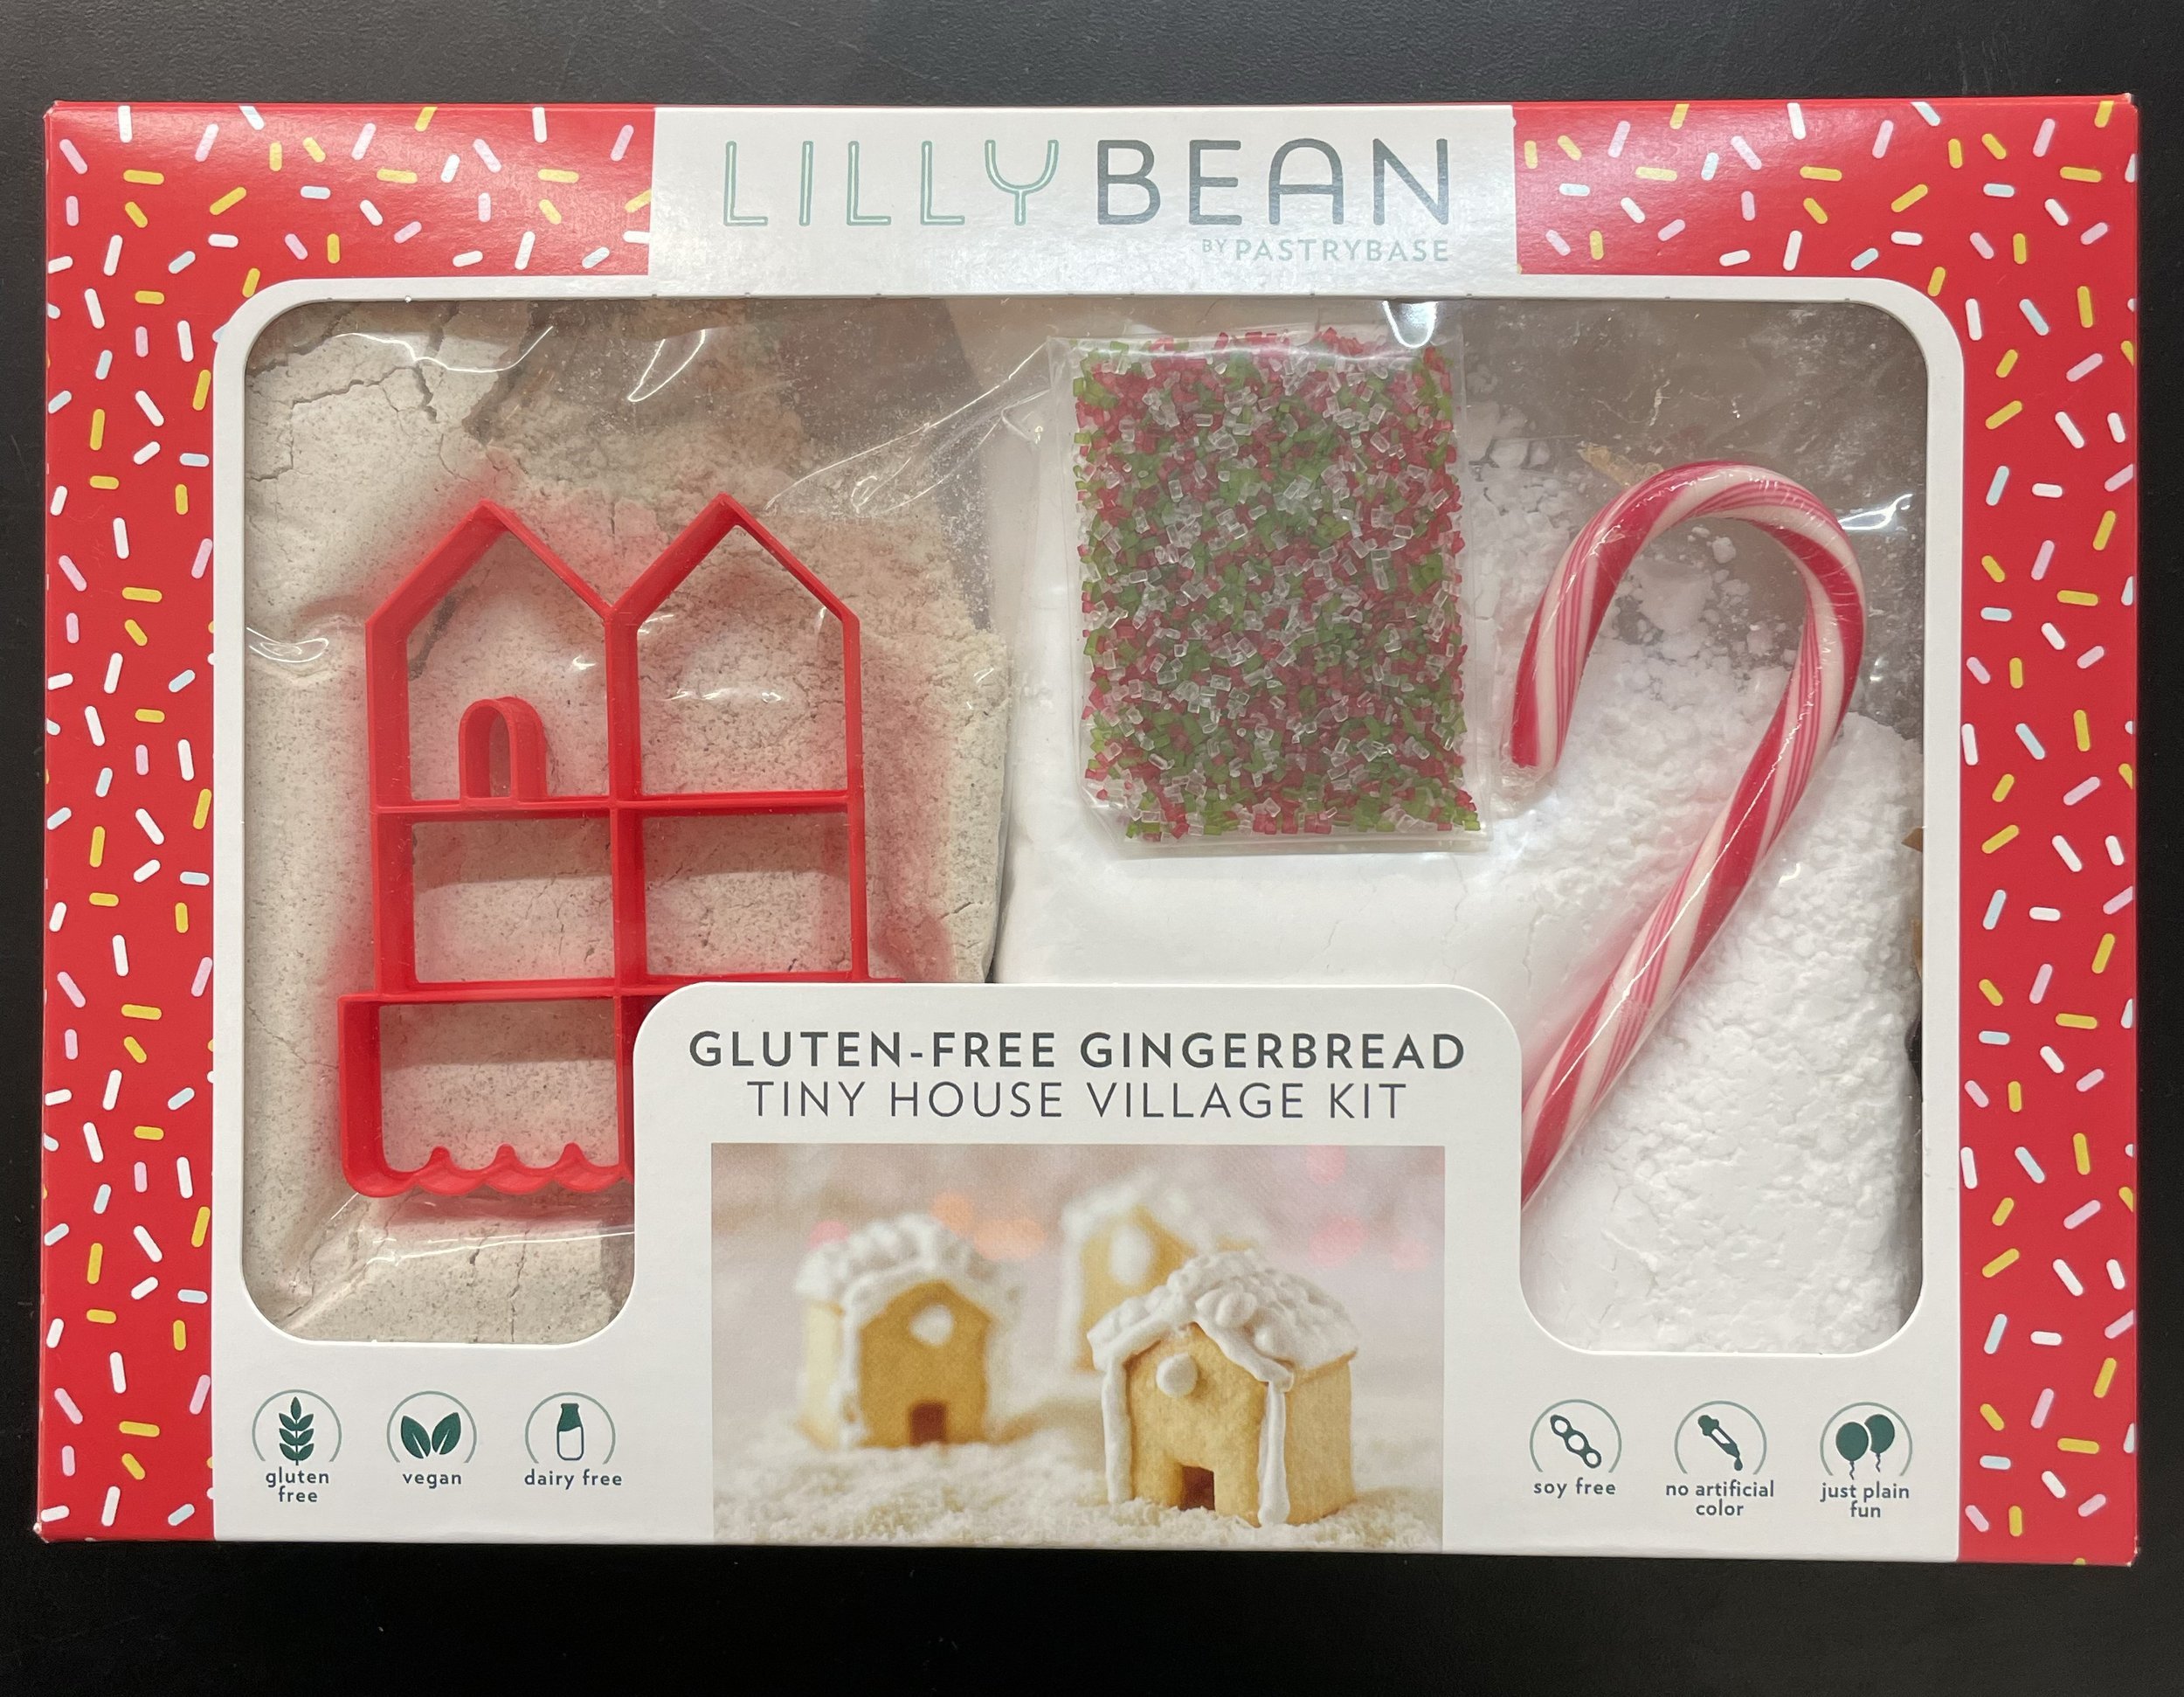 4. Gingerbread Village Baking Kit